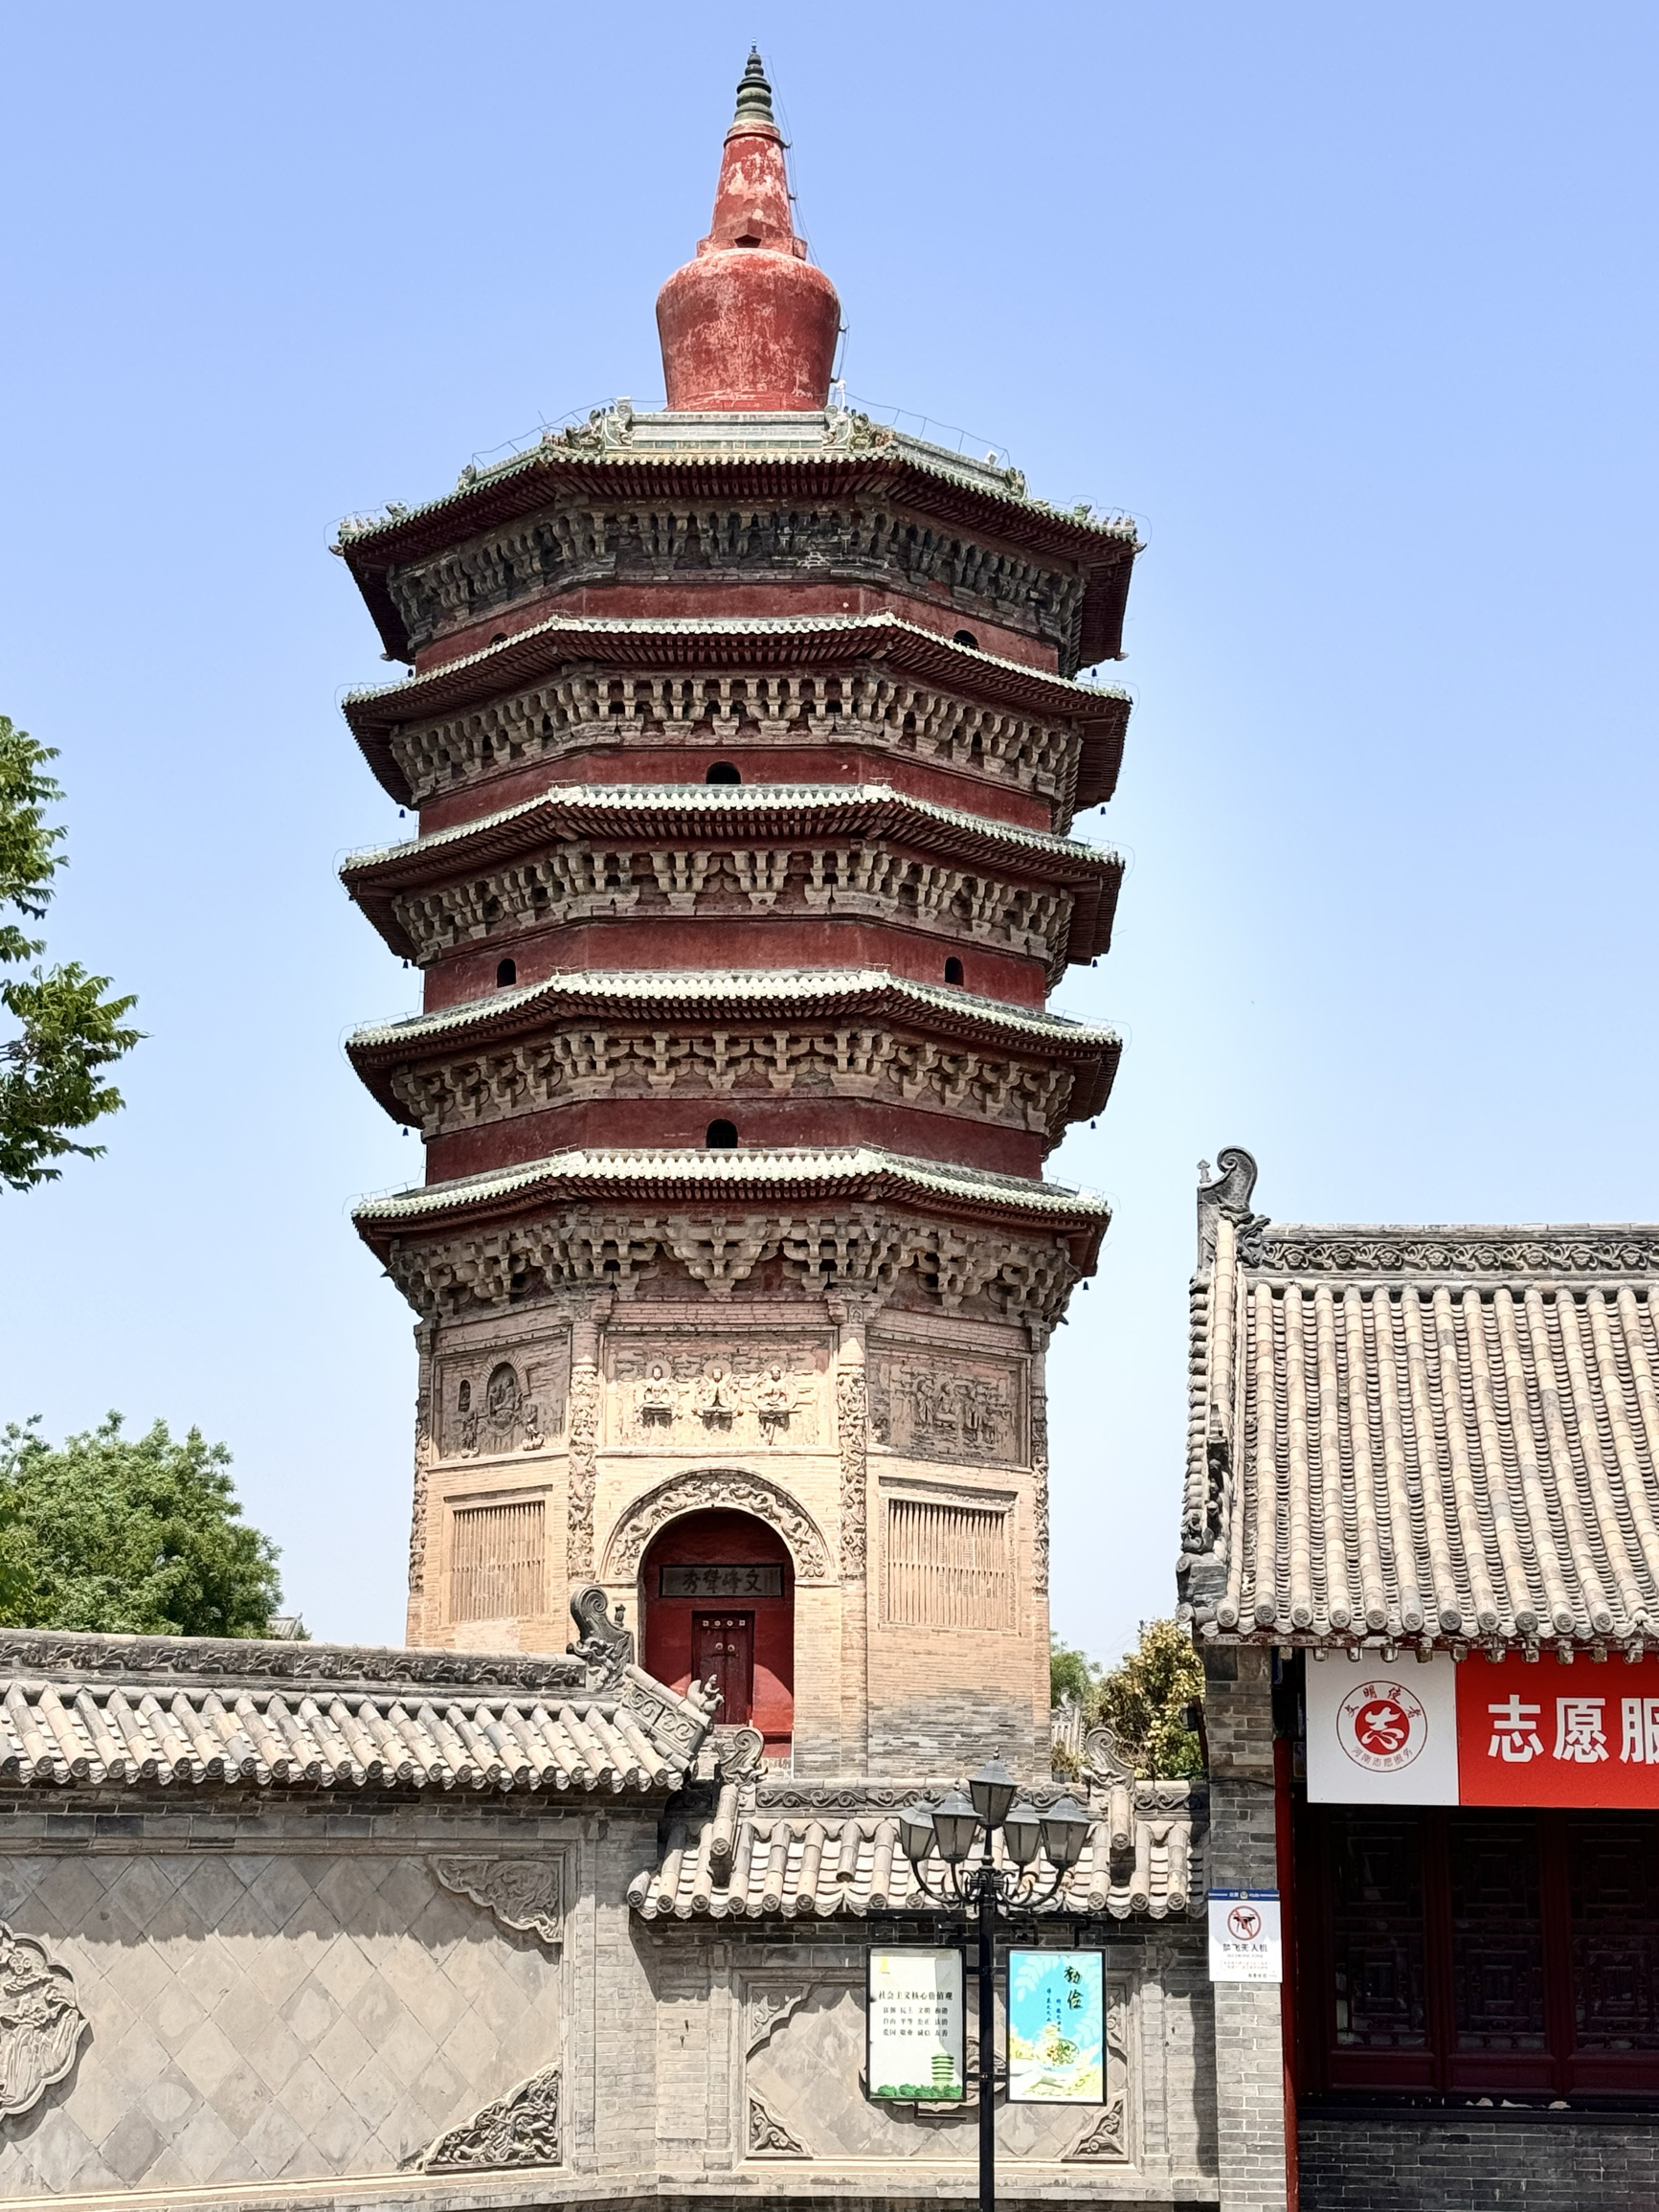 安阳文峰塔又叫天宁寺，一座古老而庄重的建筑，承载着历史的厚重与文化的底蕴。它矗立在安阳的土地上，宛如